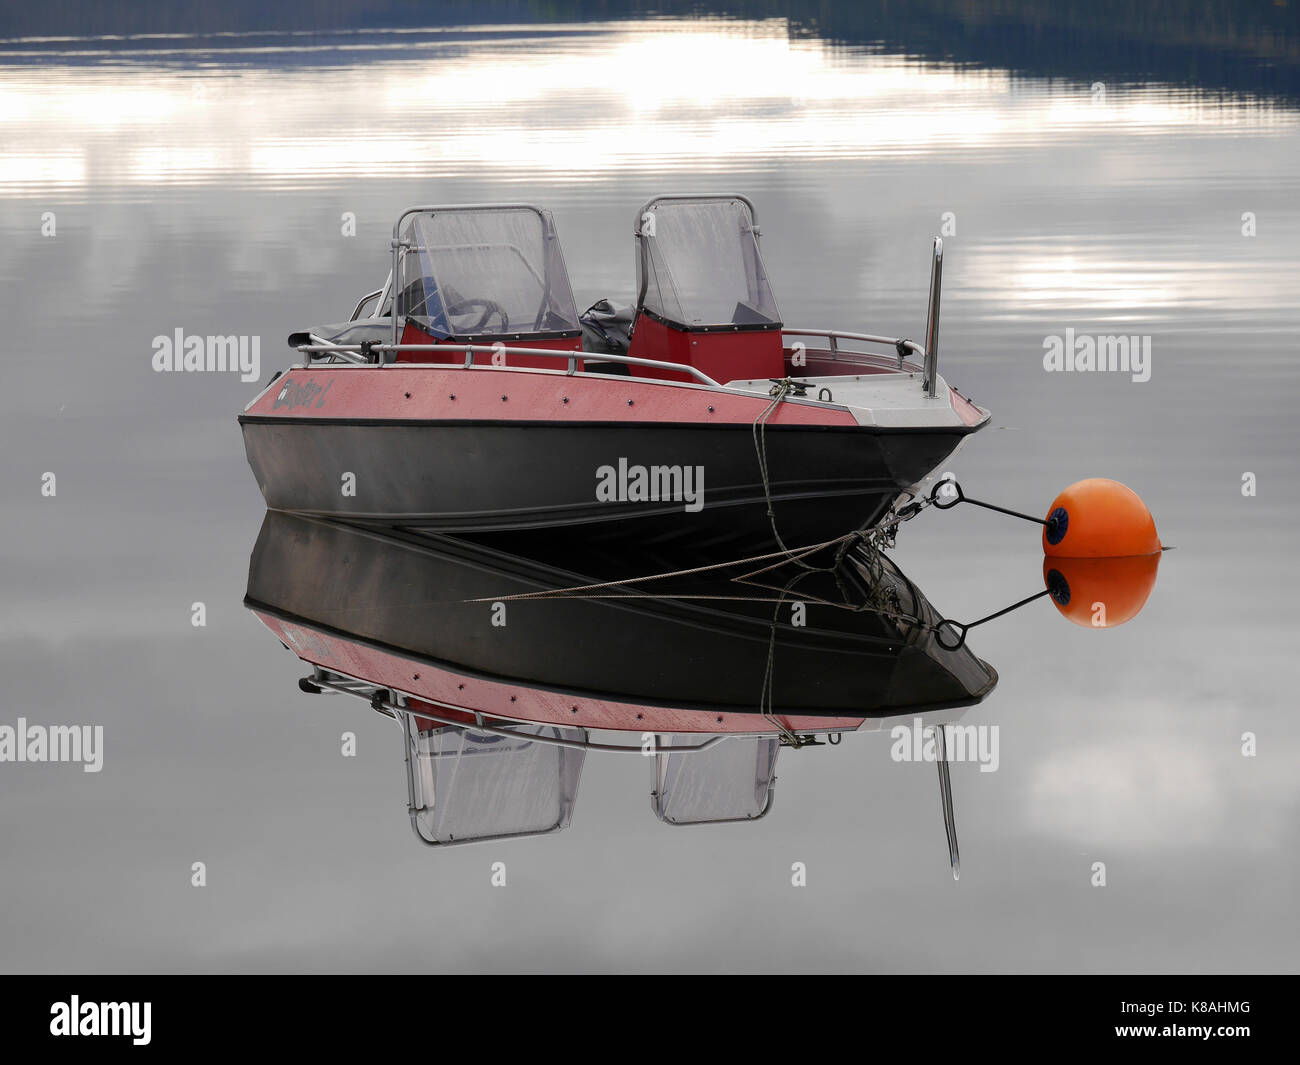 Le bateau en aluminium Buster se reflète dans le lac calme Åresjön, Åre, Jämtland, Suède. Le garçon Orange sécurise le bateau. Banque D'Images